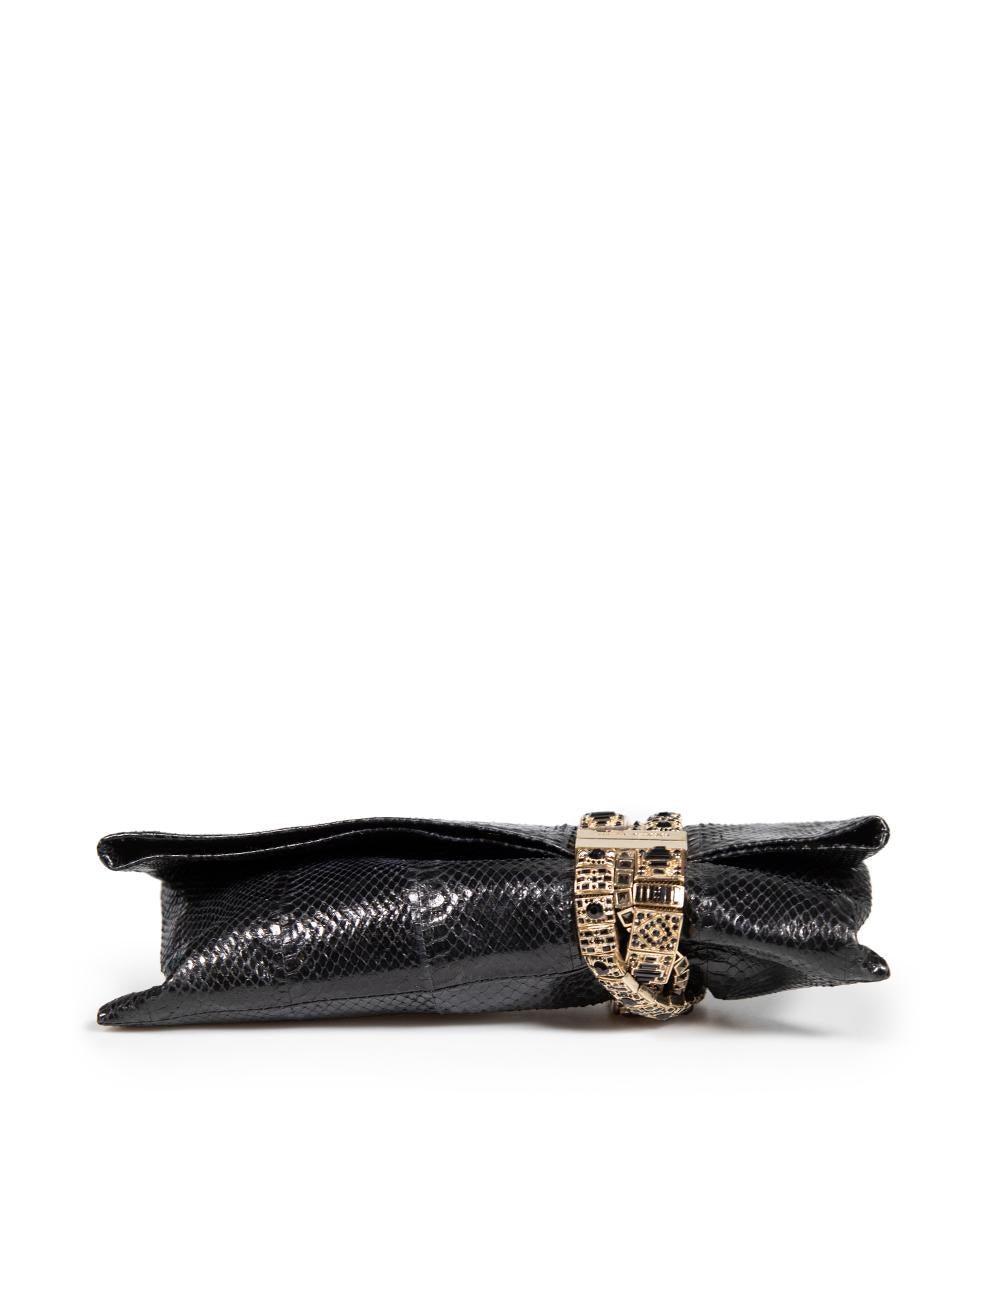 Women's Jimmy Choo Black Snakeskin Embellished Clutch